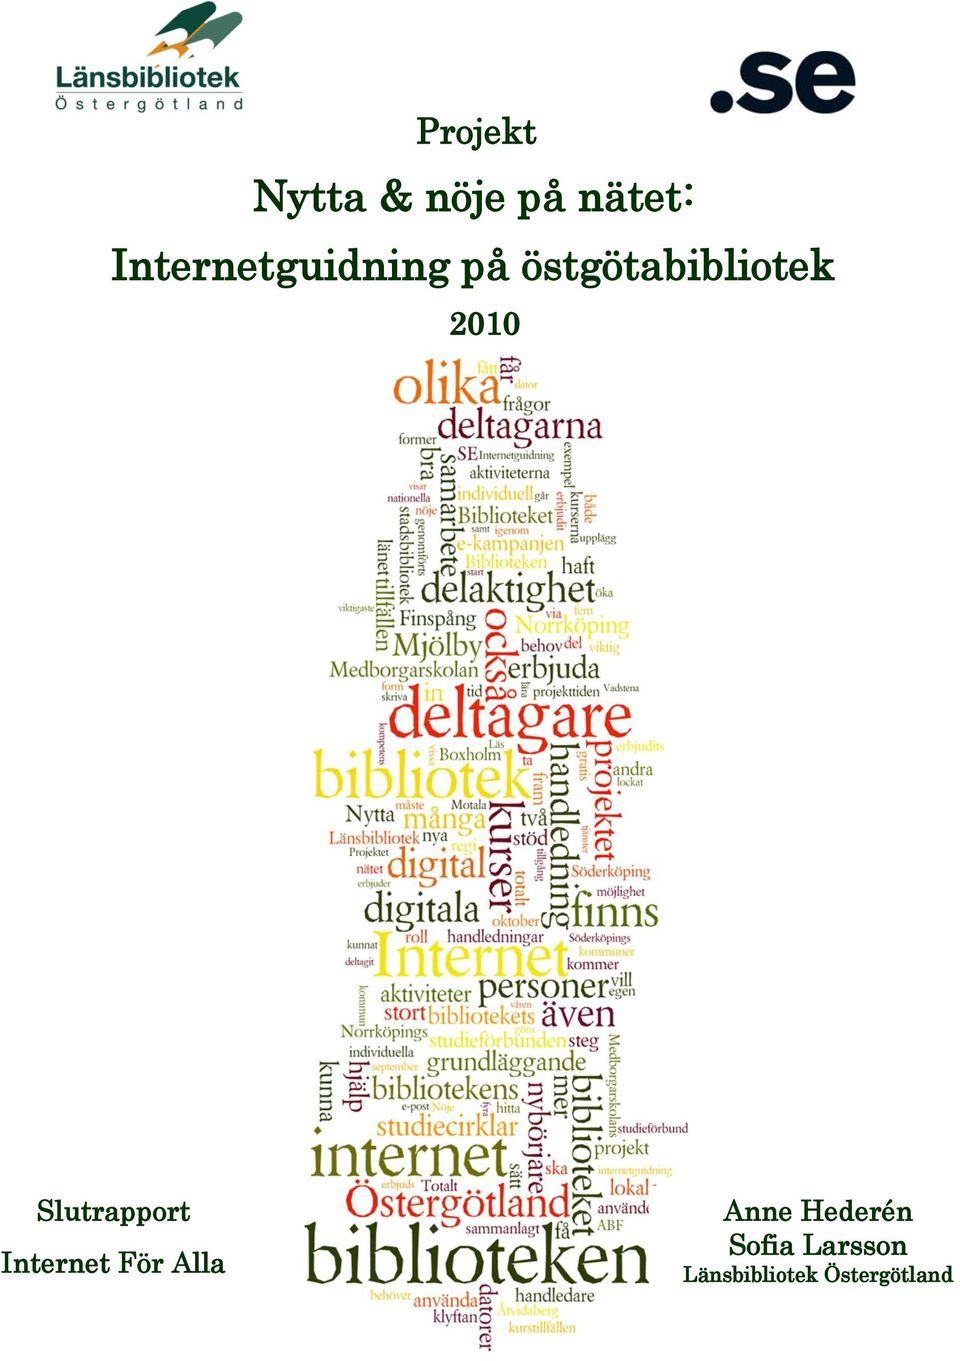 2010 Slutrapport Internet För Alla